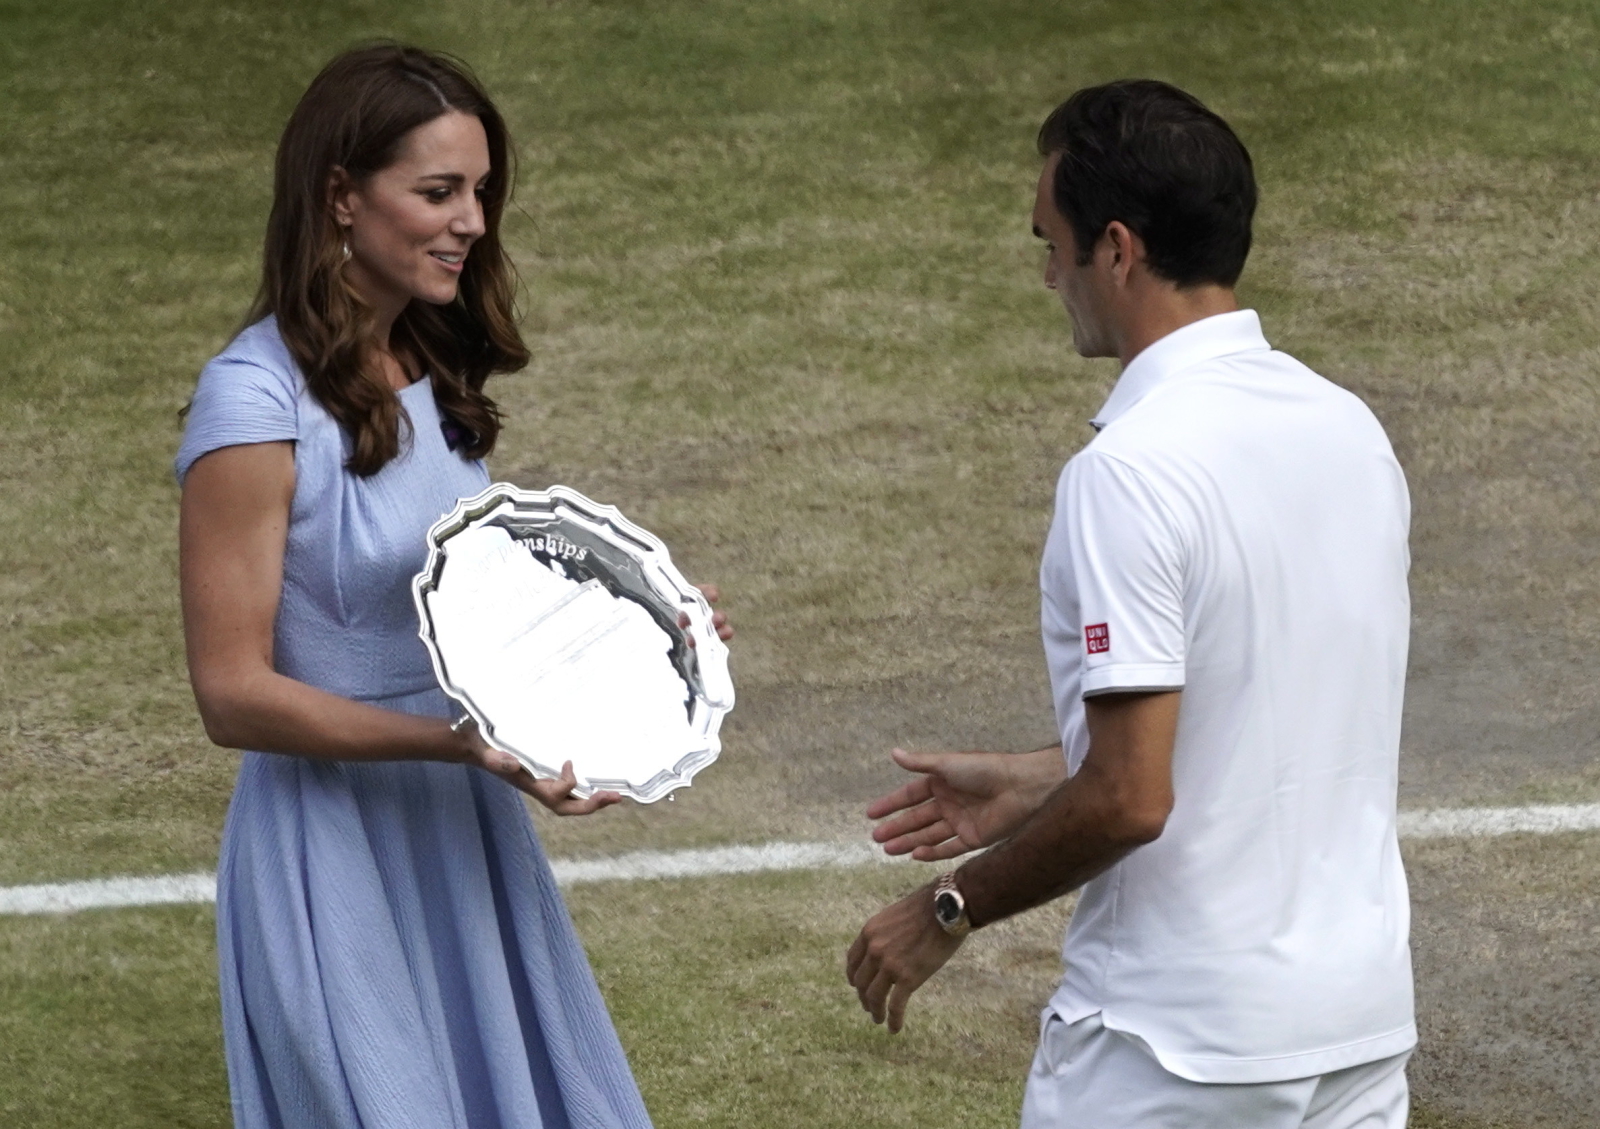 Księżna Kate wręcza Rogerowi Federerowi nagrodę za 2 miejsce w Wimbledonie. Fot. PAP/EPA/WILL OLIVER